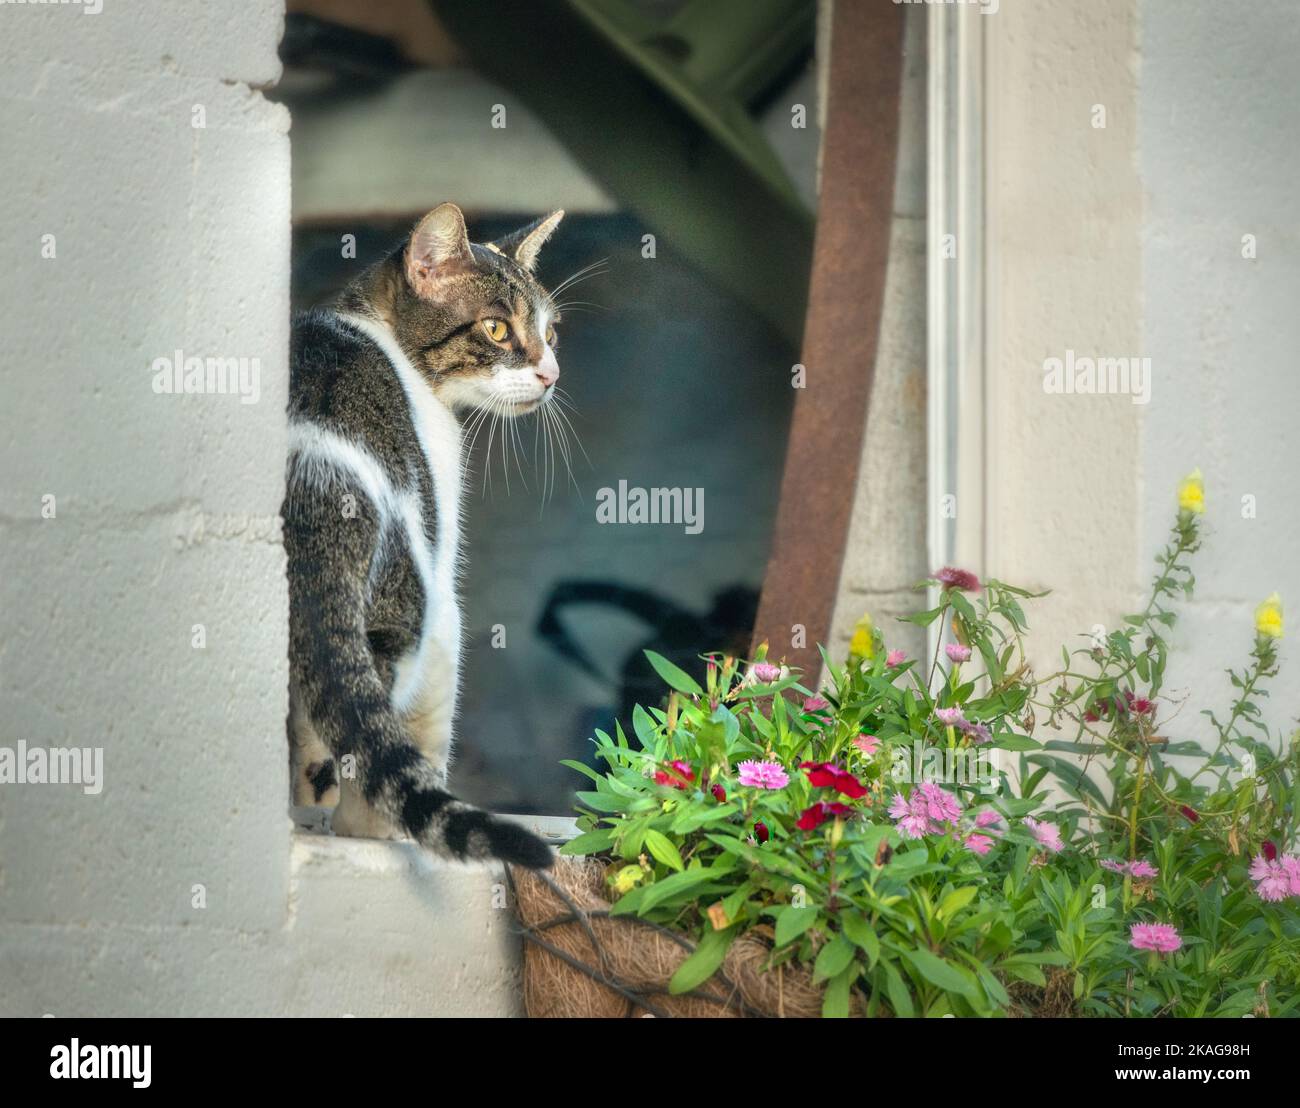 El gato del granero Calico se sienta en la ventana abierta del granero con flores Foto de stock